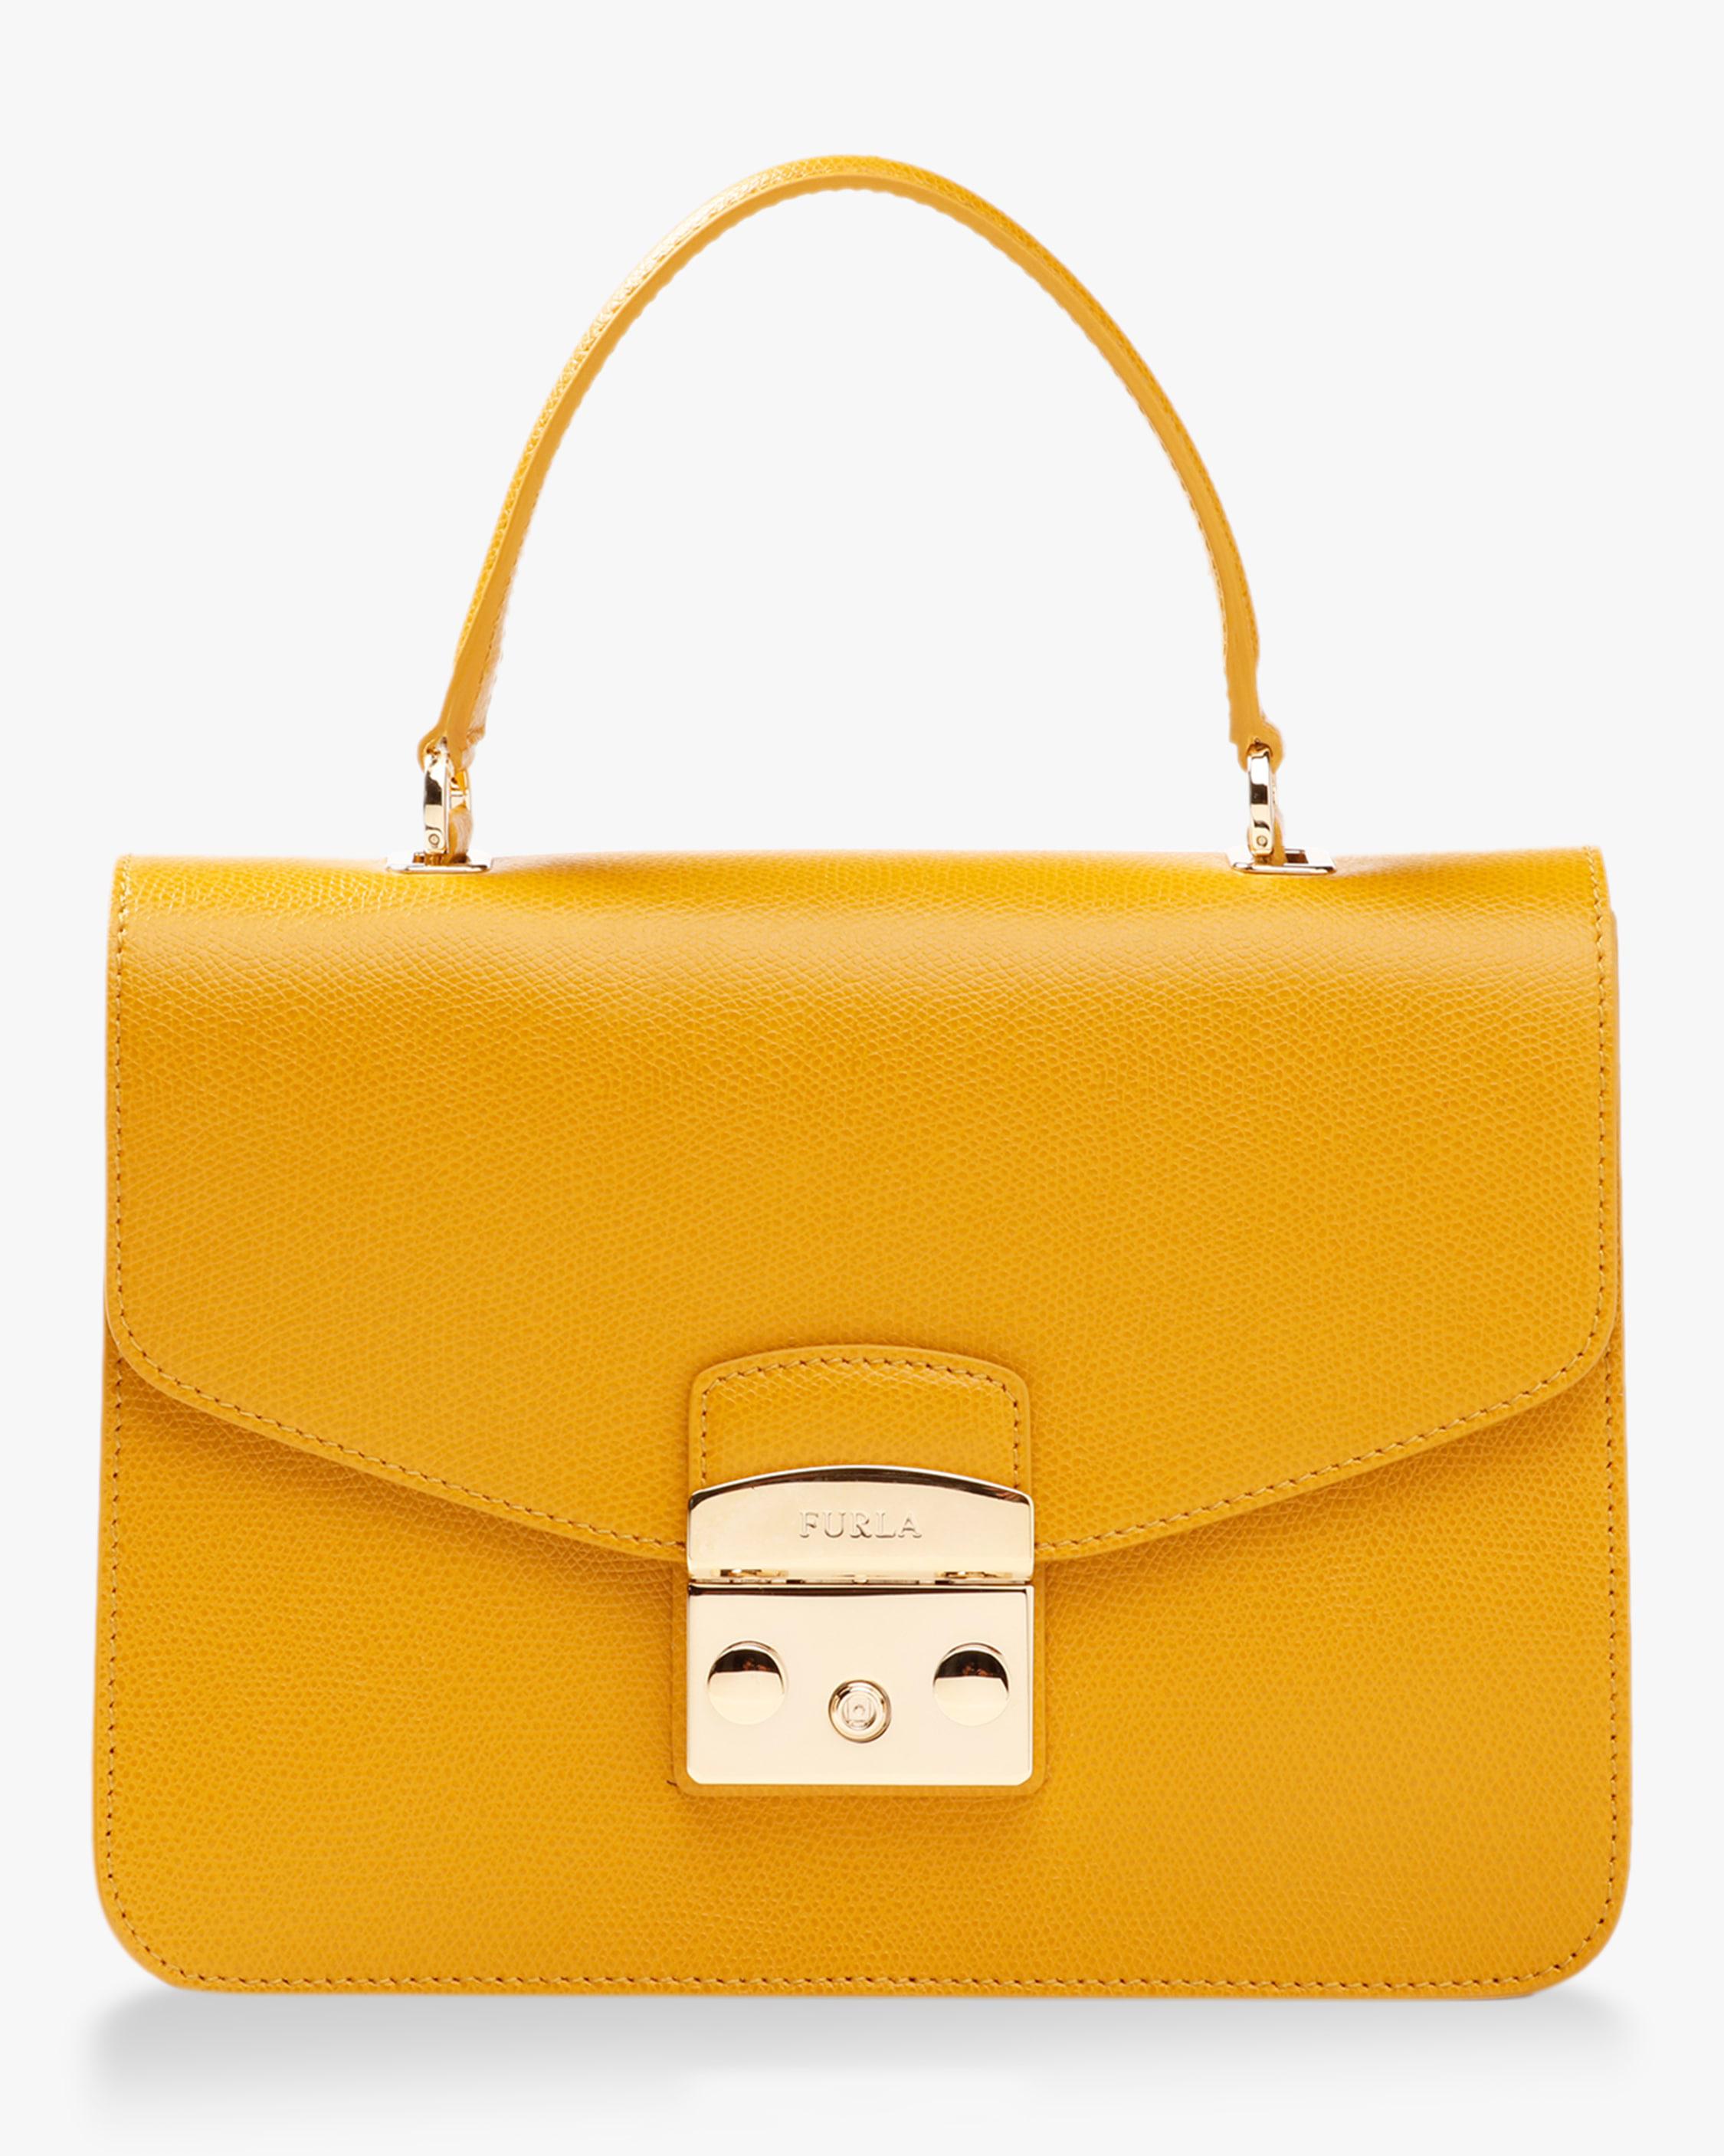 Lyst - Furla Metropolis S Top Handle Bag in Yellow